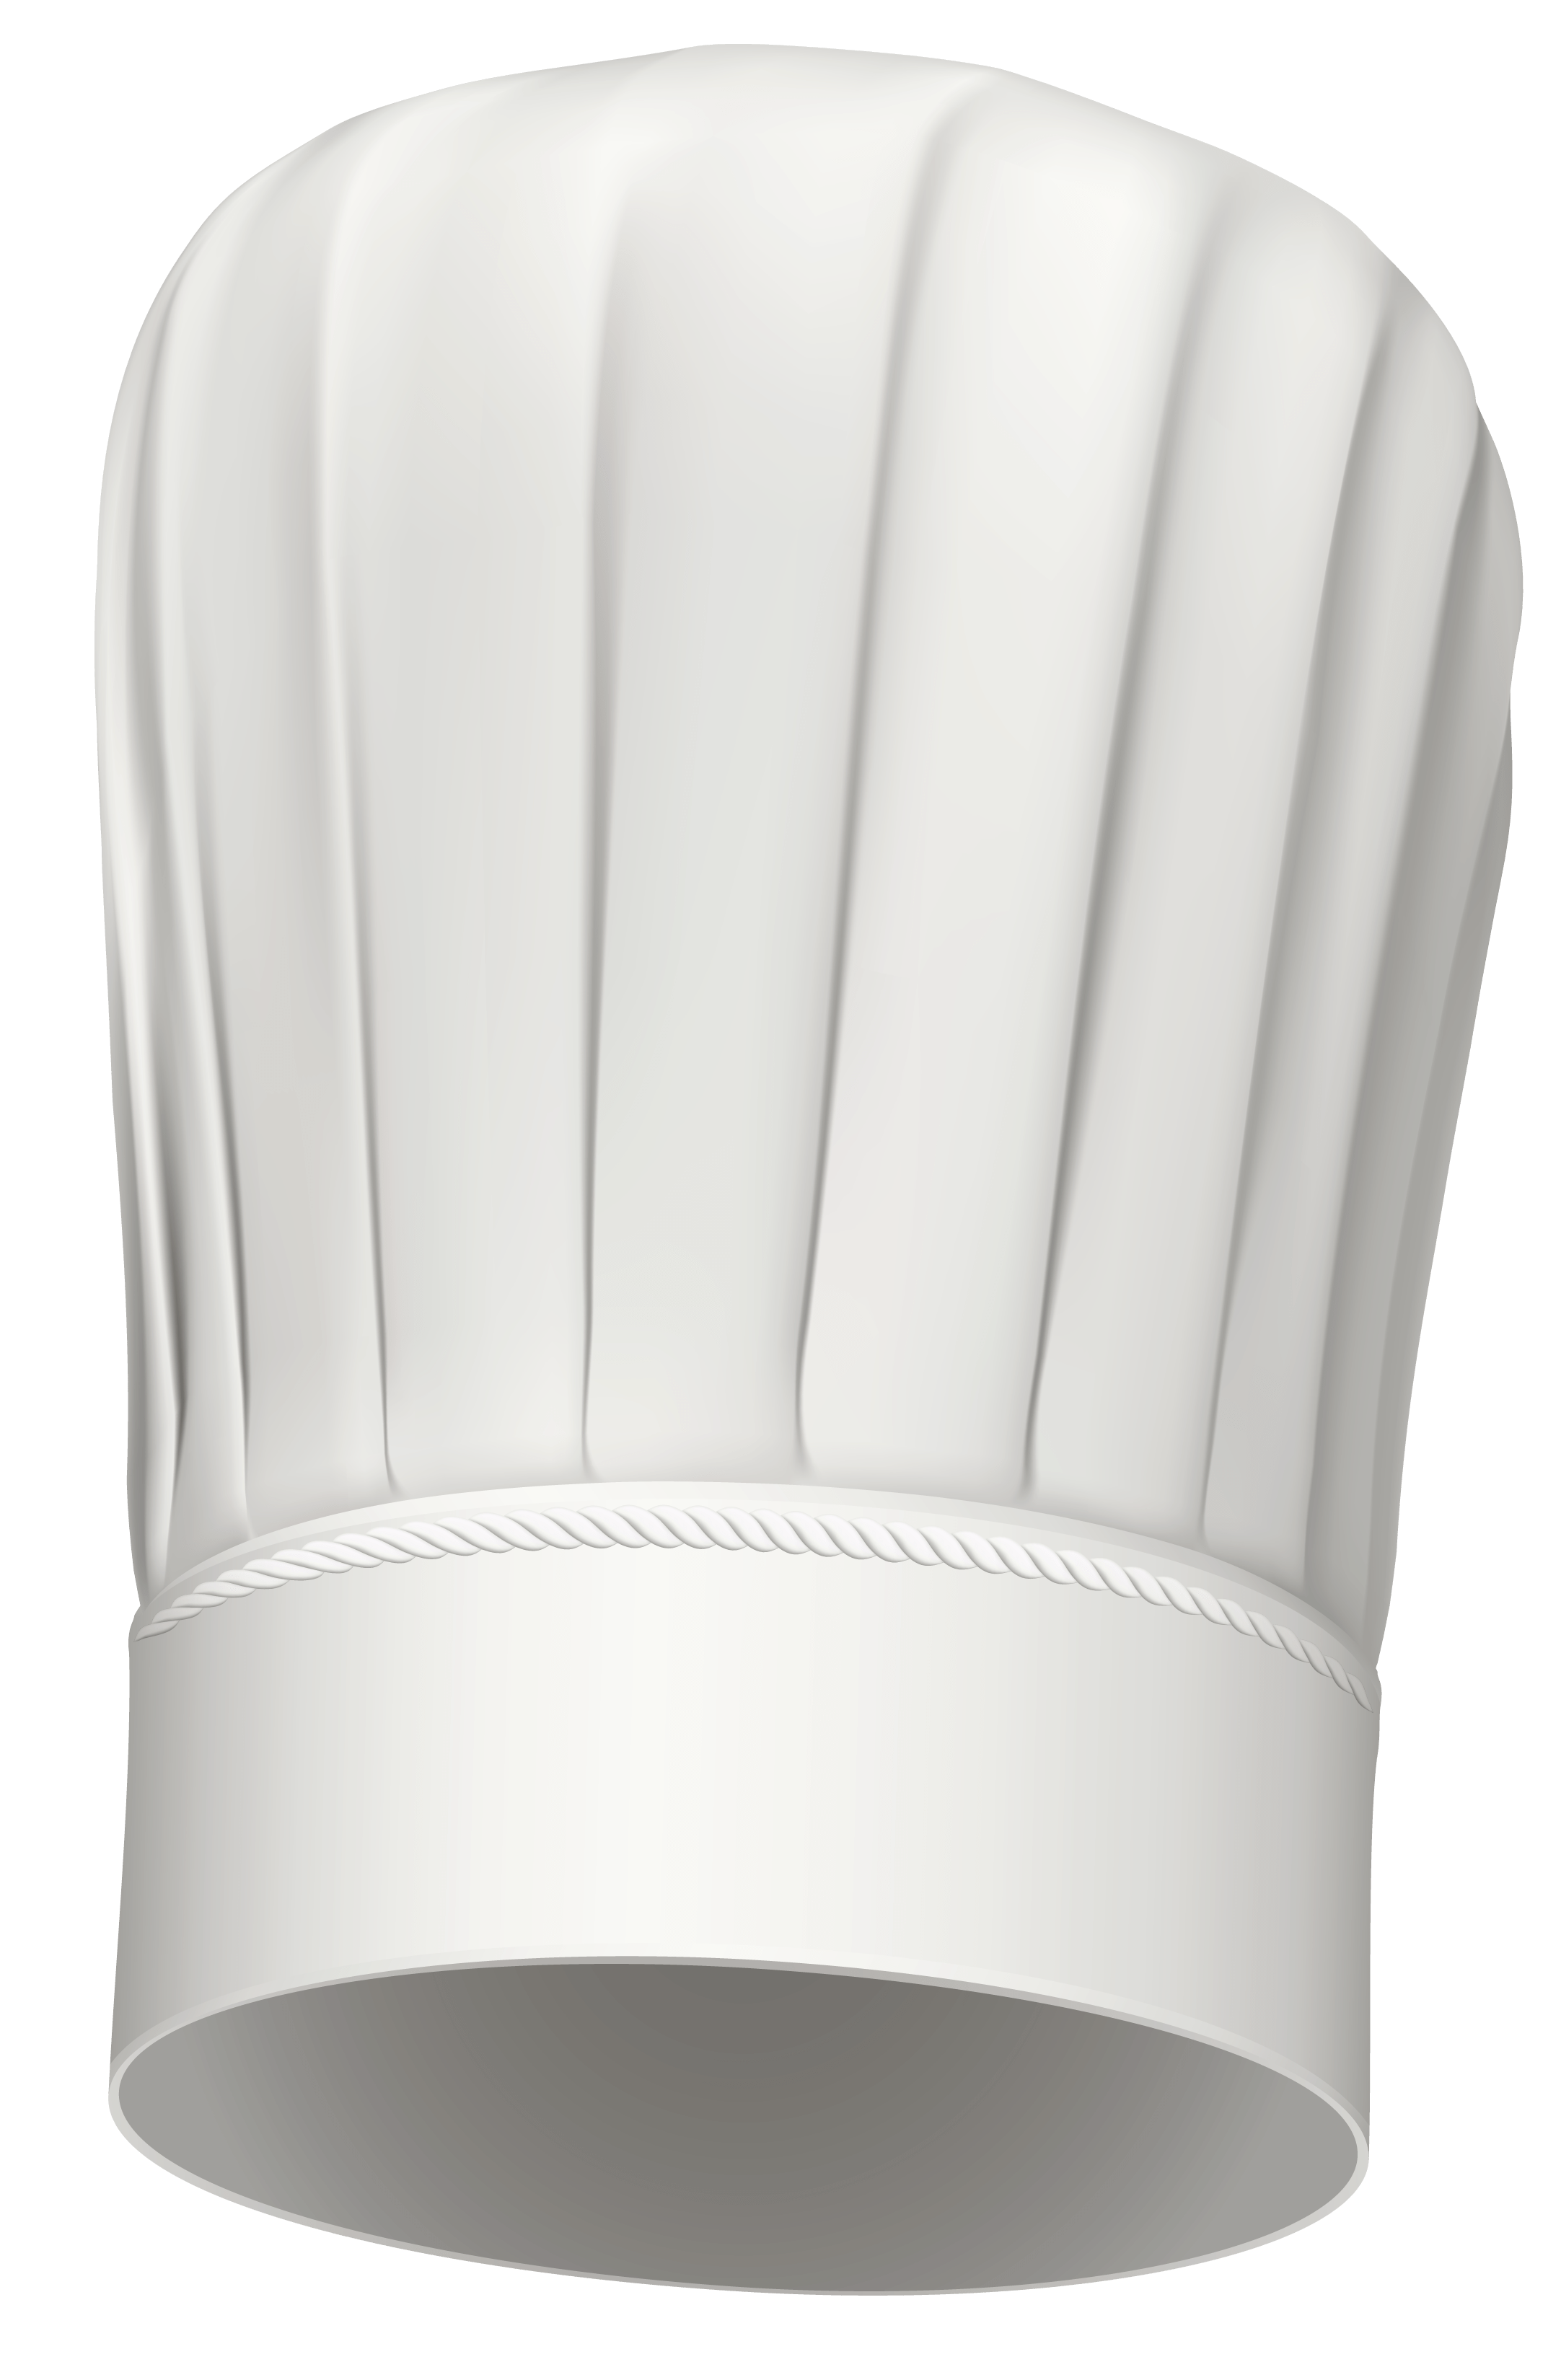 Immagine Trasparente del cappello del cuoco unico